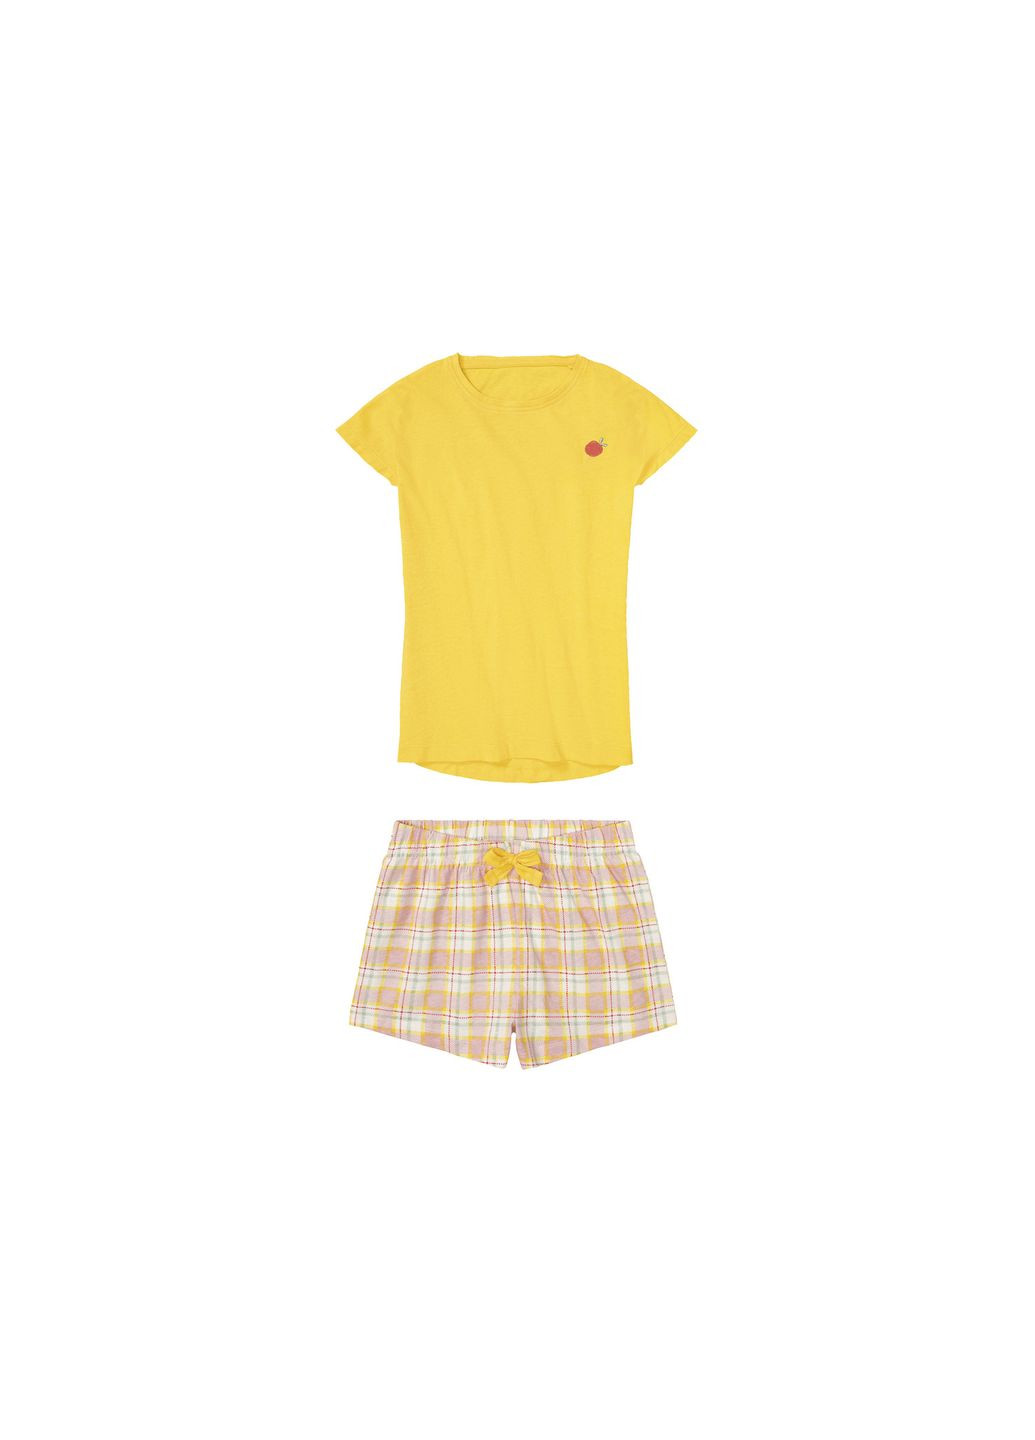 Жовта піжама (футболка і шорти) для дівчинки 409979 жовтий Pepperts